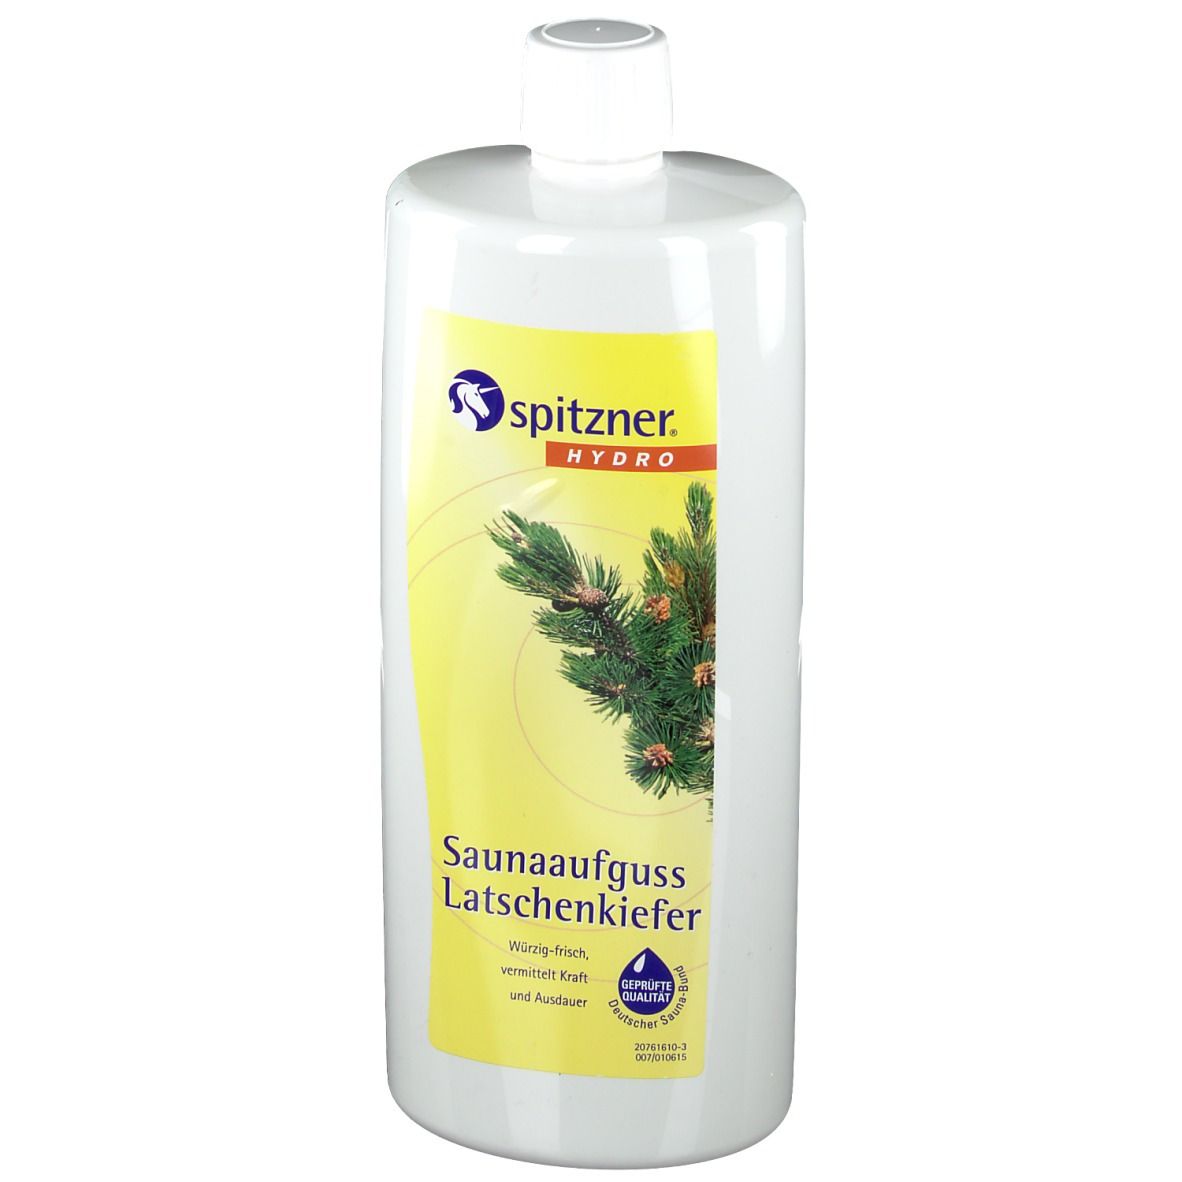 Spitzner® Hydro Saunaaufguss Latschenkiefer